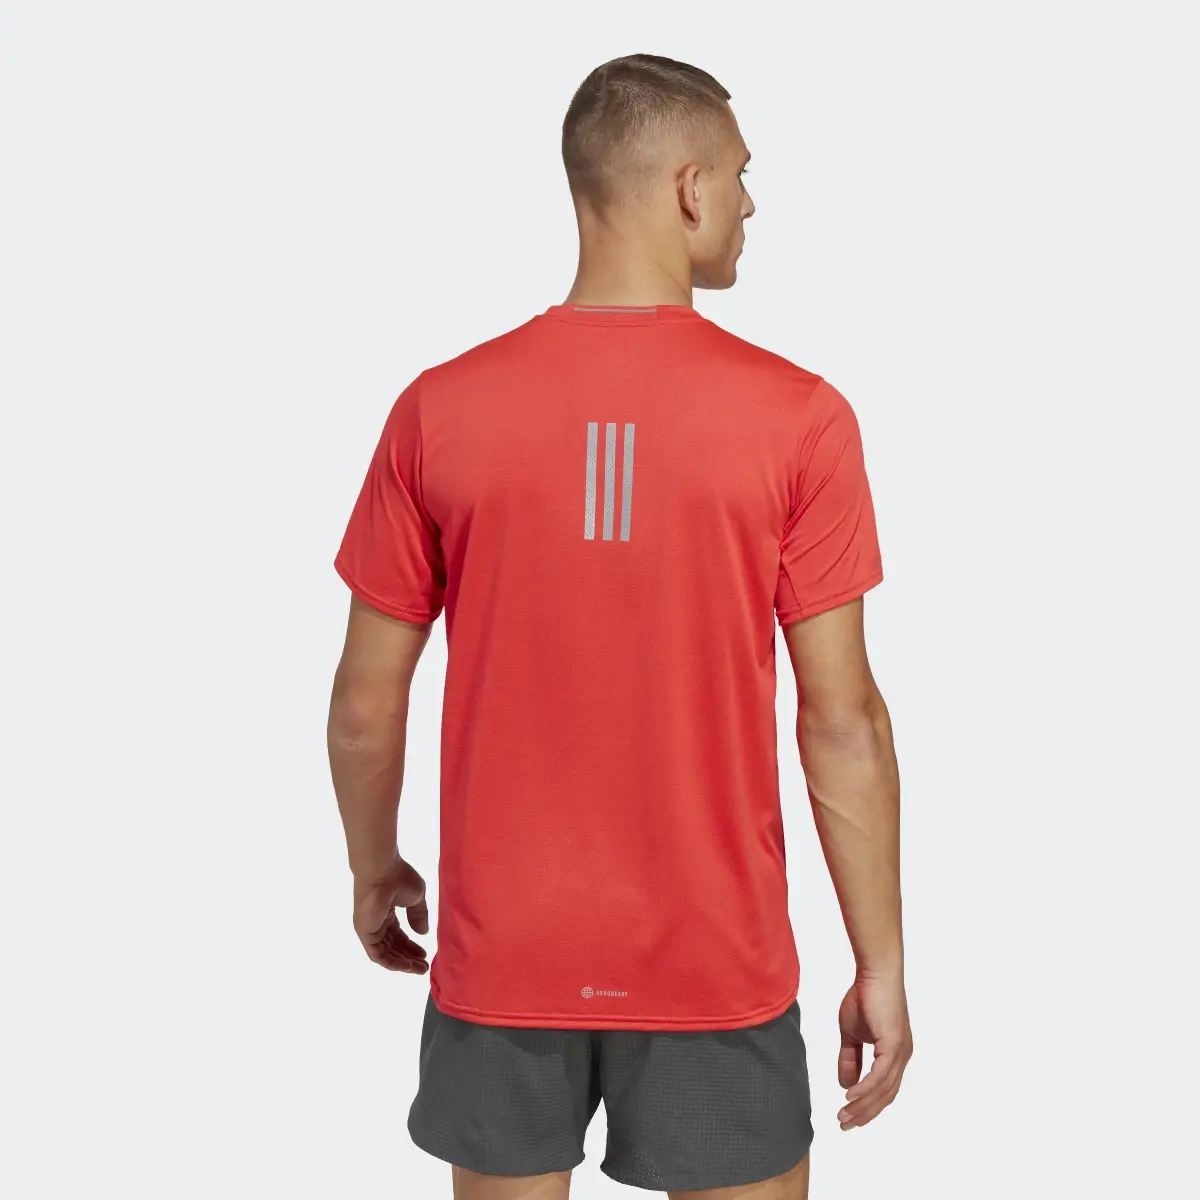 Adidas Camiseta Designed 4 Running. 3